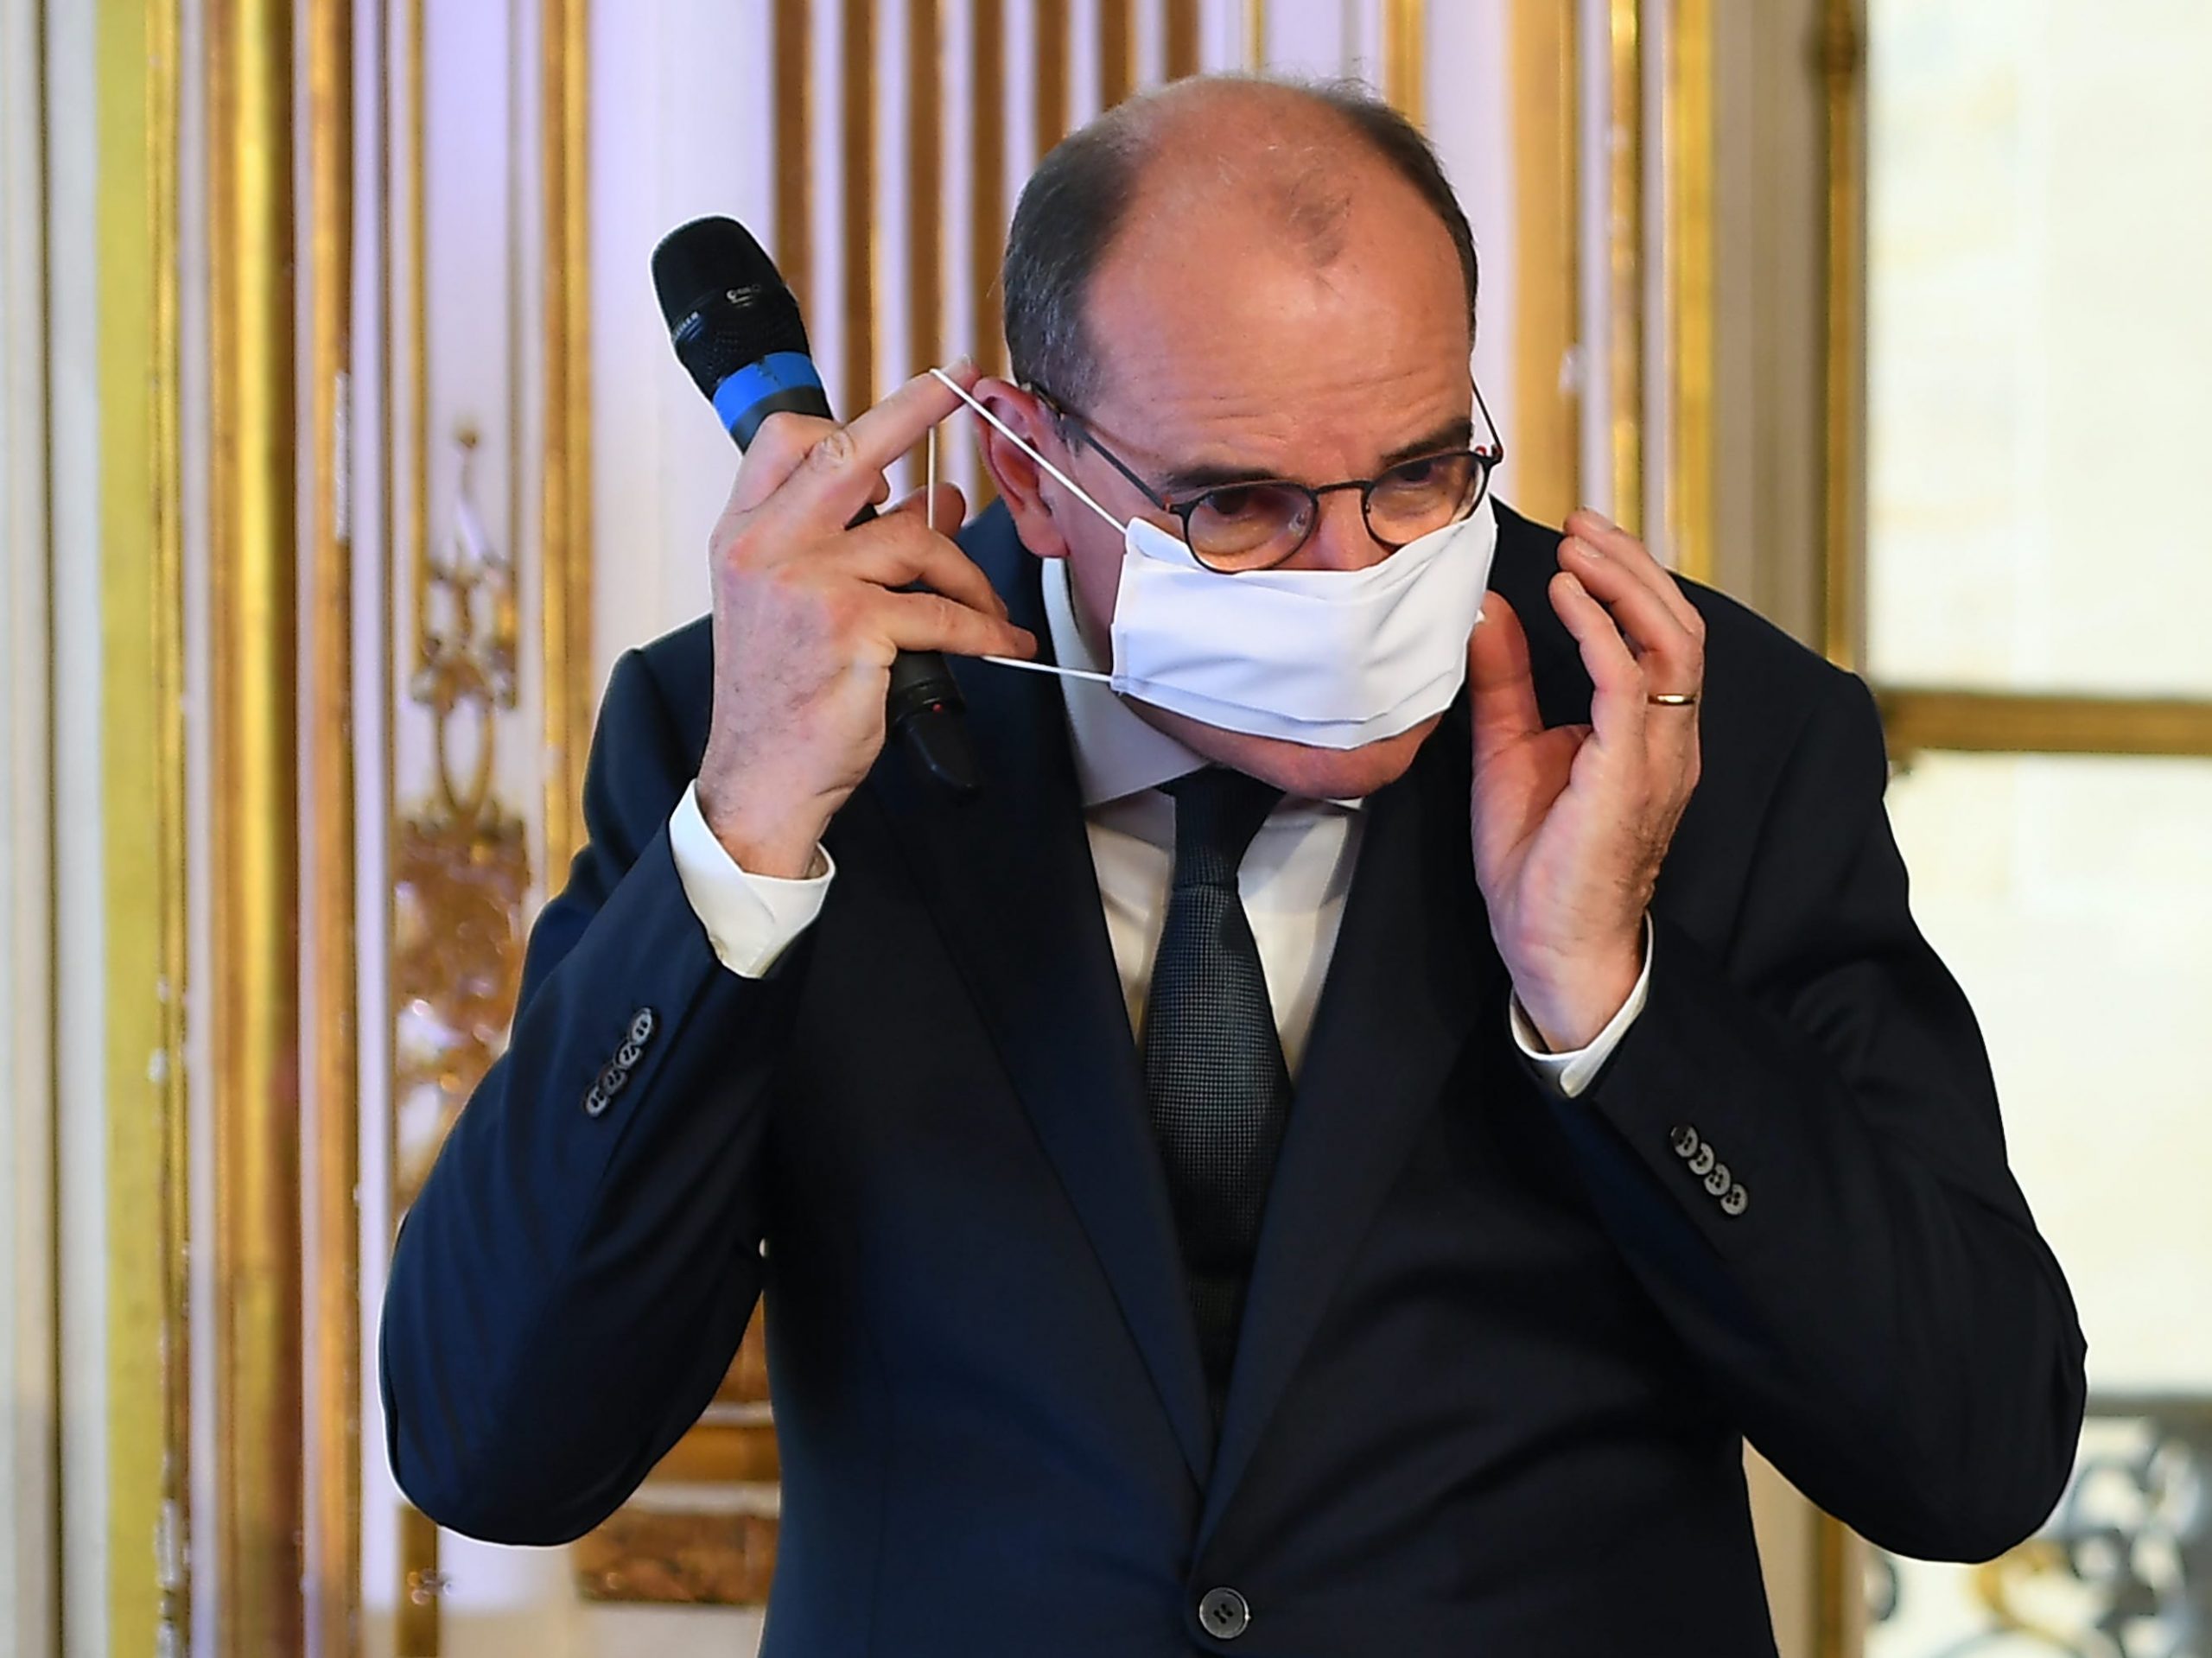 De Franse premier Jean Castex kondigde onlangs aan dat mondkapjes in binnenruimtes weer verplicht zijn in Parijs. Foto: Christophe Archambault/AFP